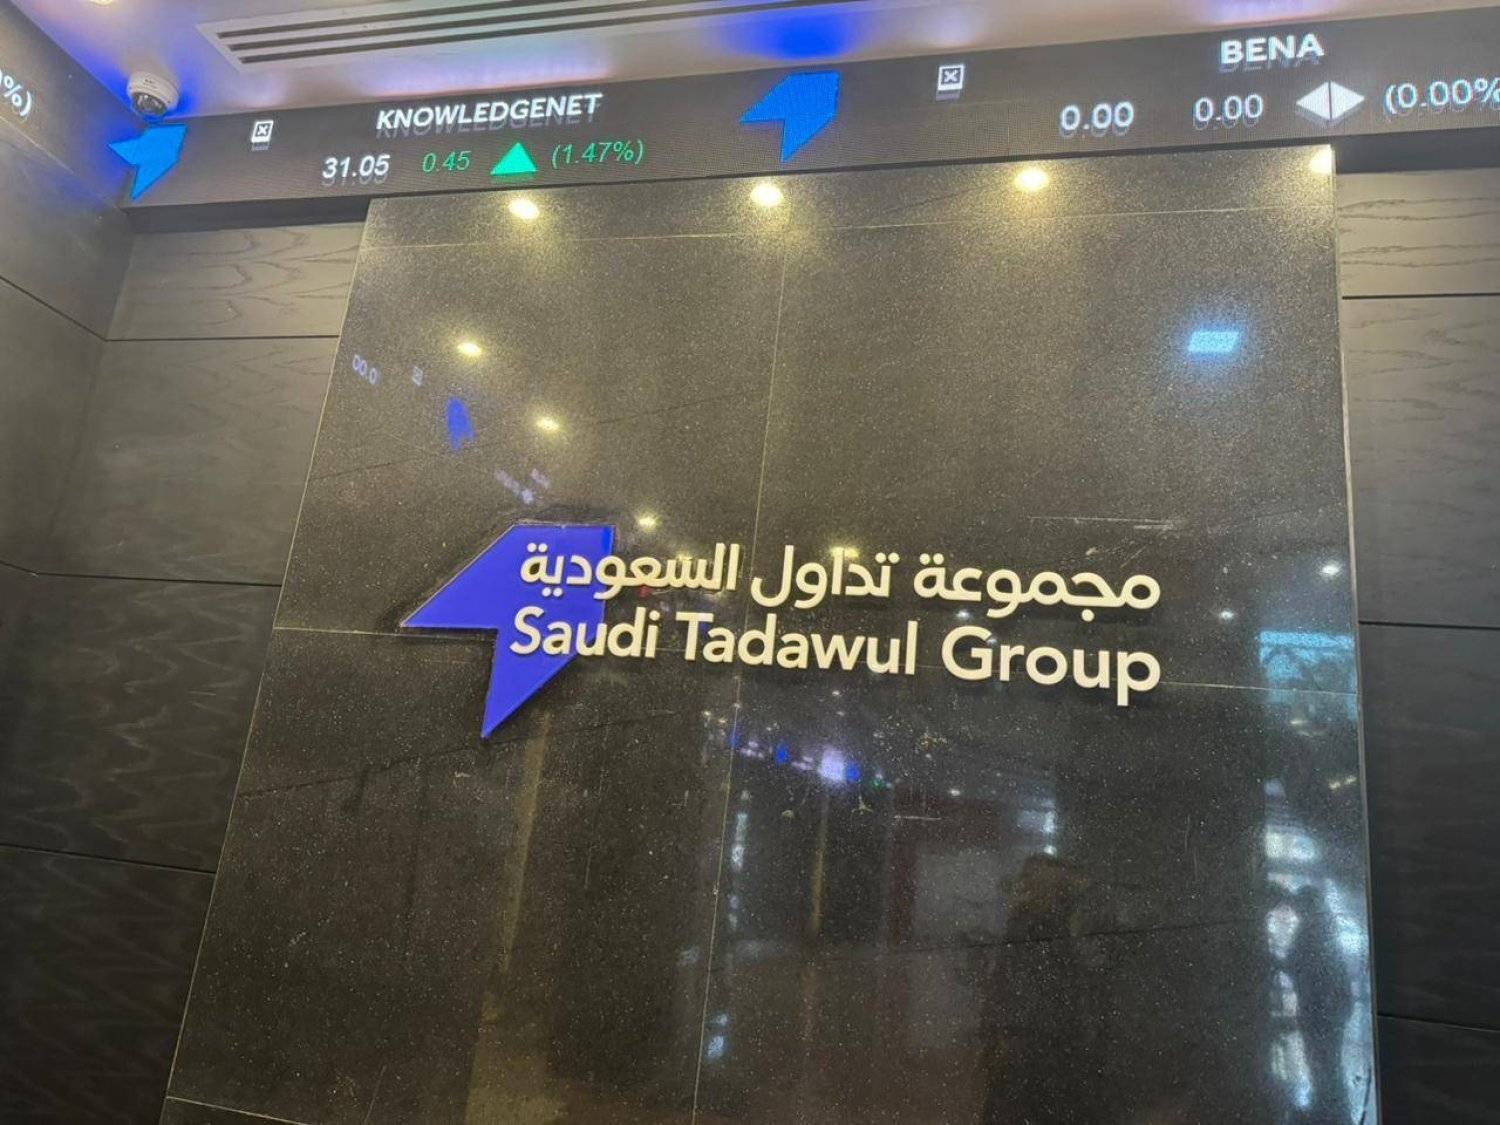 أغلق مؤشر الأسهم السعودية الموازي (نمو) اليوم مرتفعاً 25.93 نقطة (الشرق الأوسط)